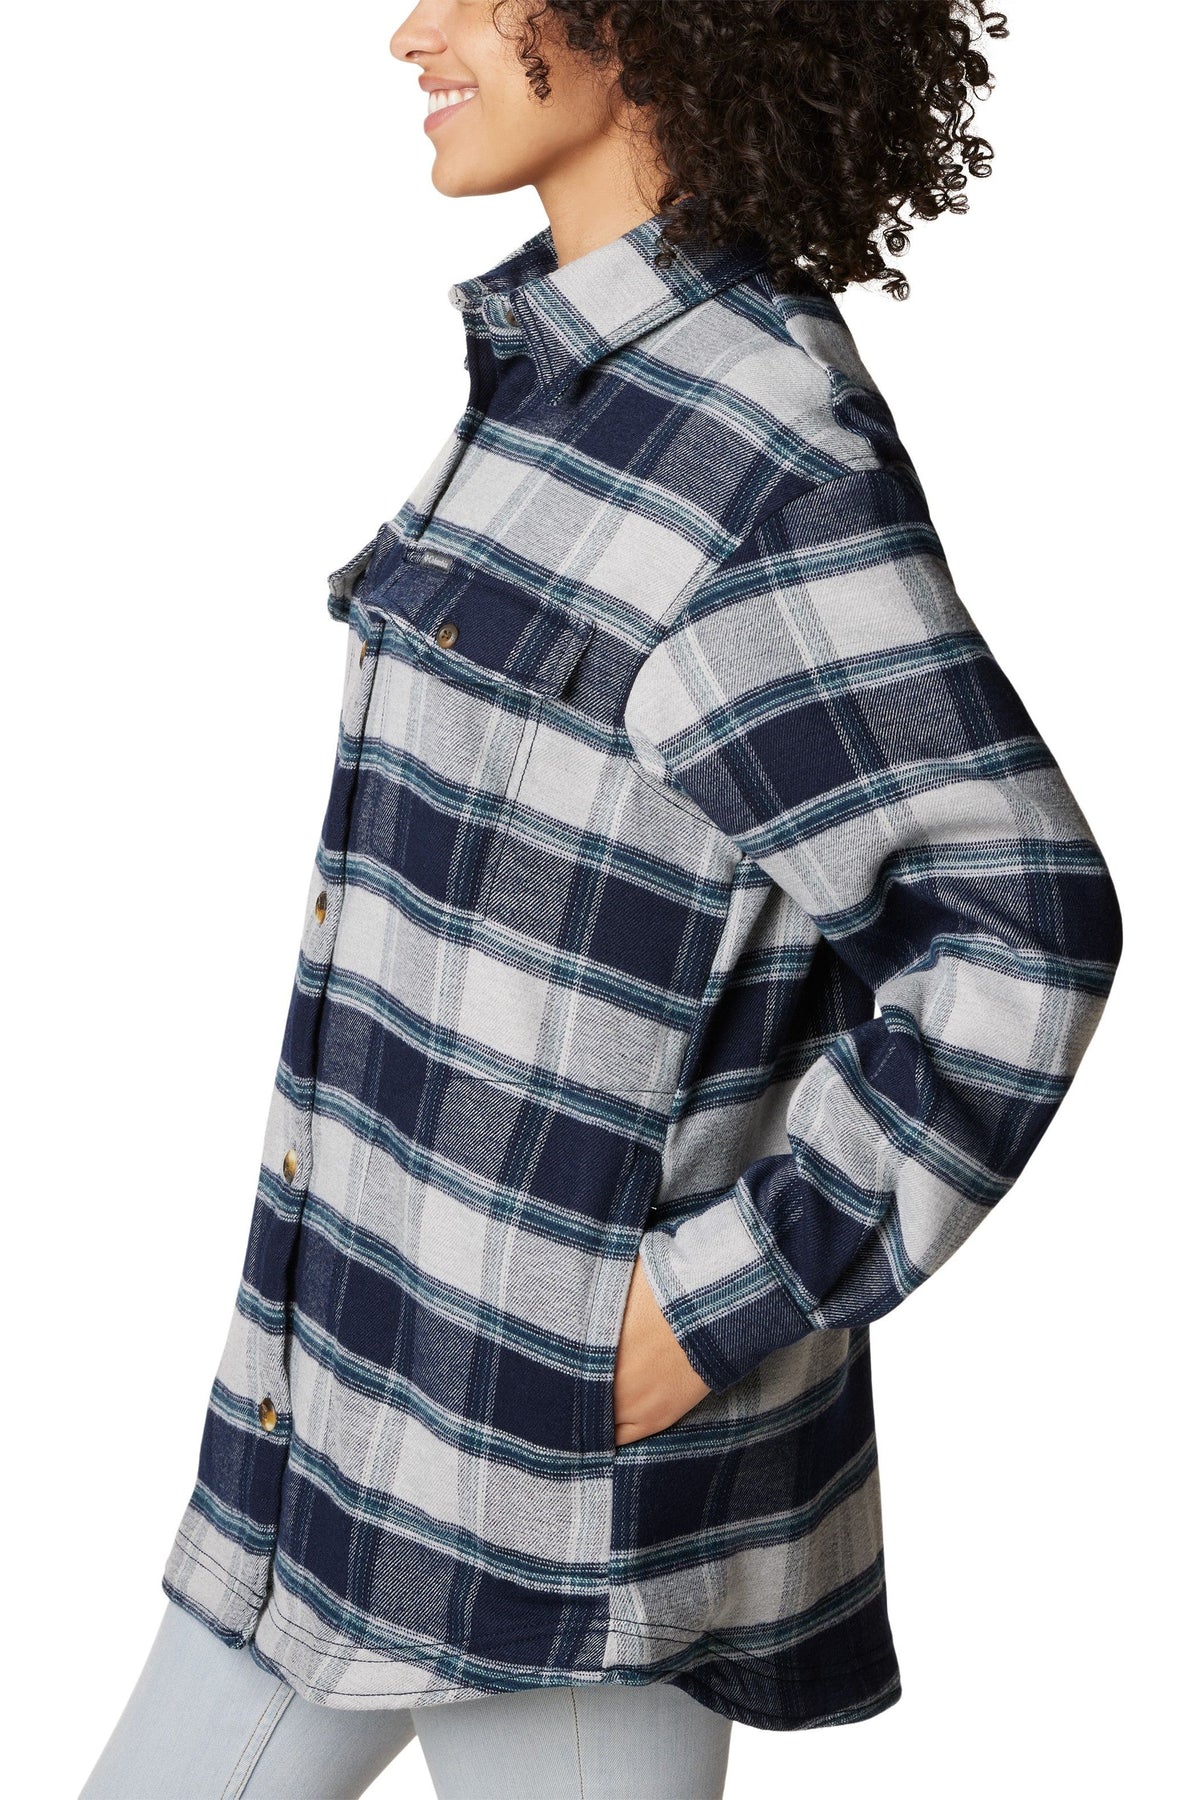 Columbia Calico Basin Shirt Jacket - Style 2052221472, side